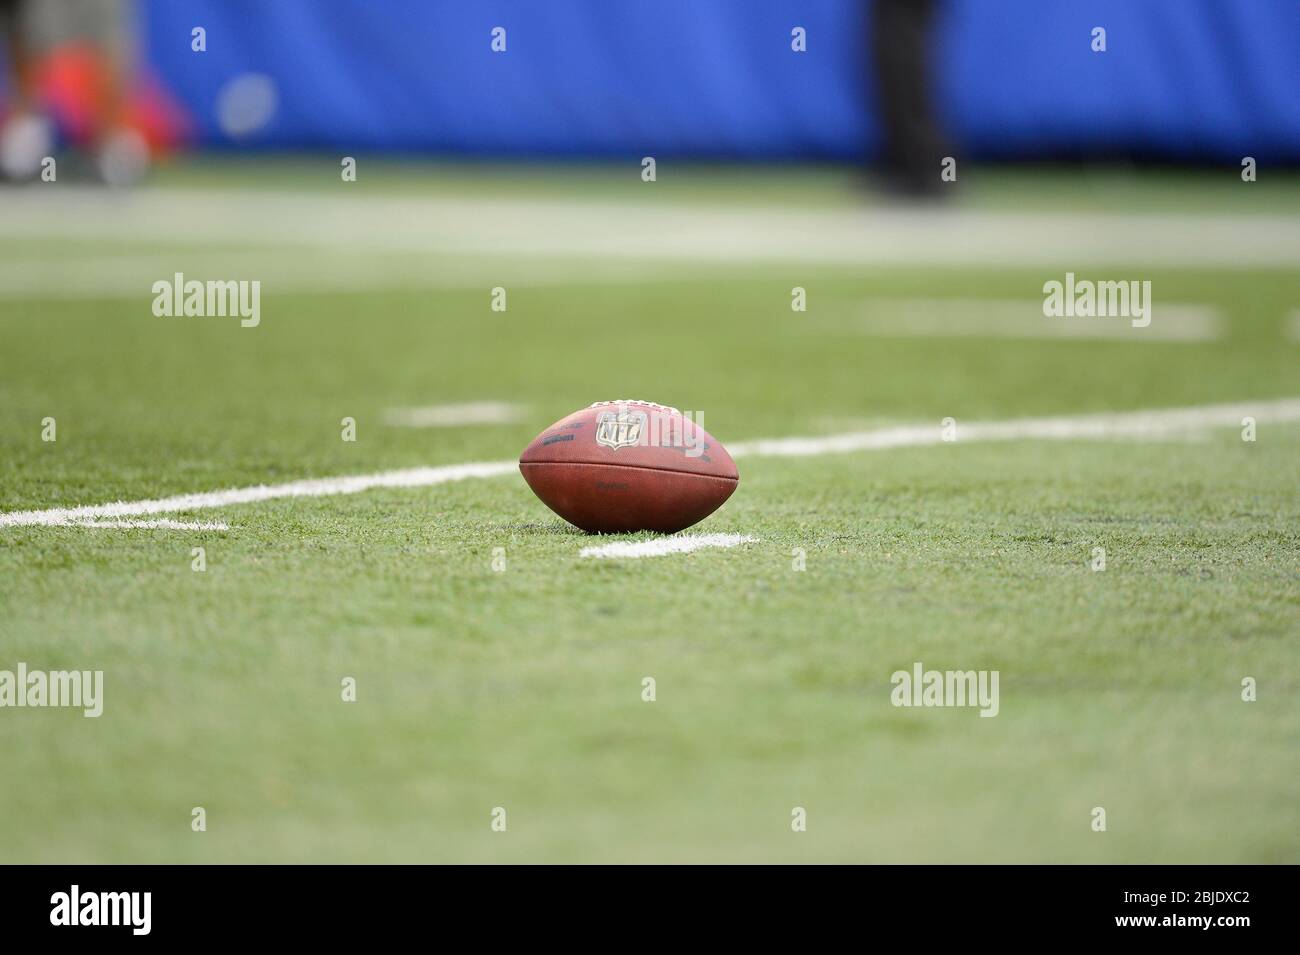 16 septembre 2012: Le football s'étend sur le gazon pendant une semaine 2 NFL NFC match entre les Tampa Bay Buccaneers et les New York Giants au MetLife Stadium i Banque D'Images